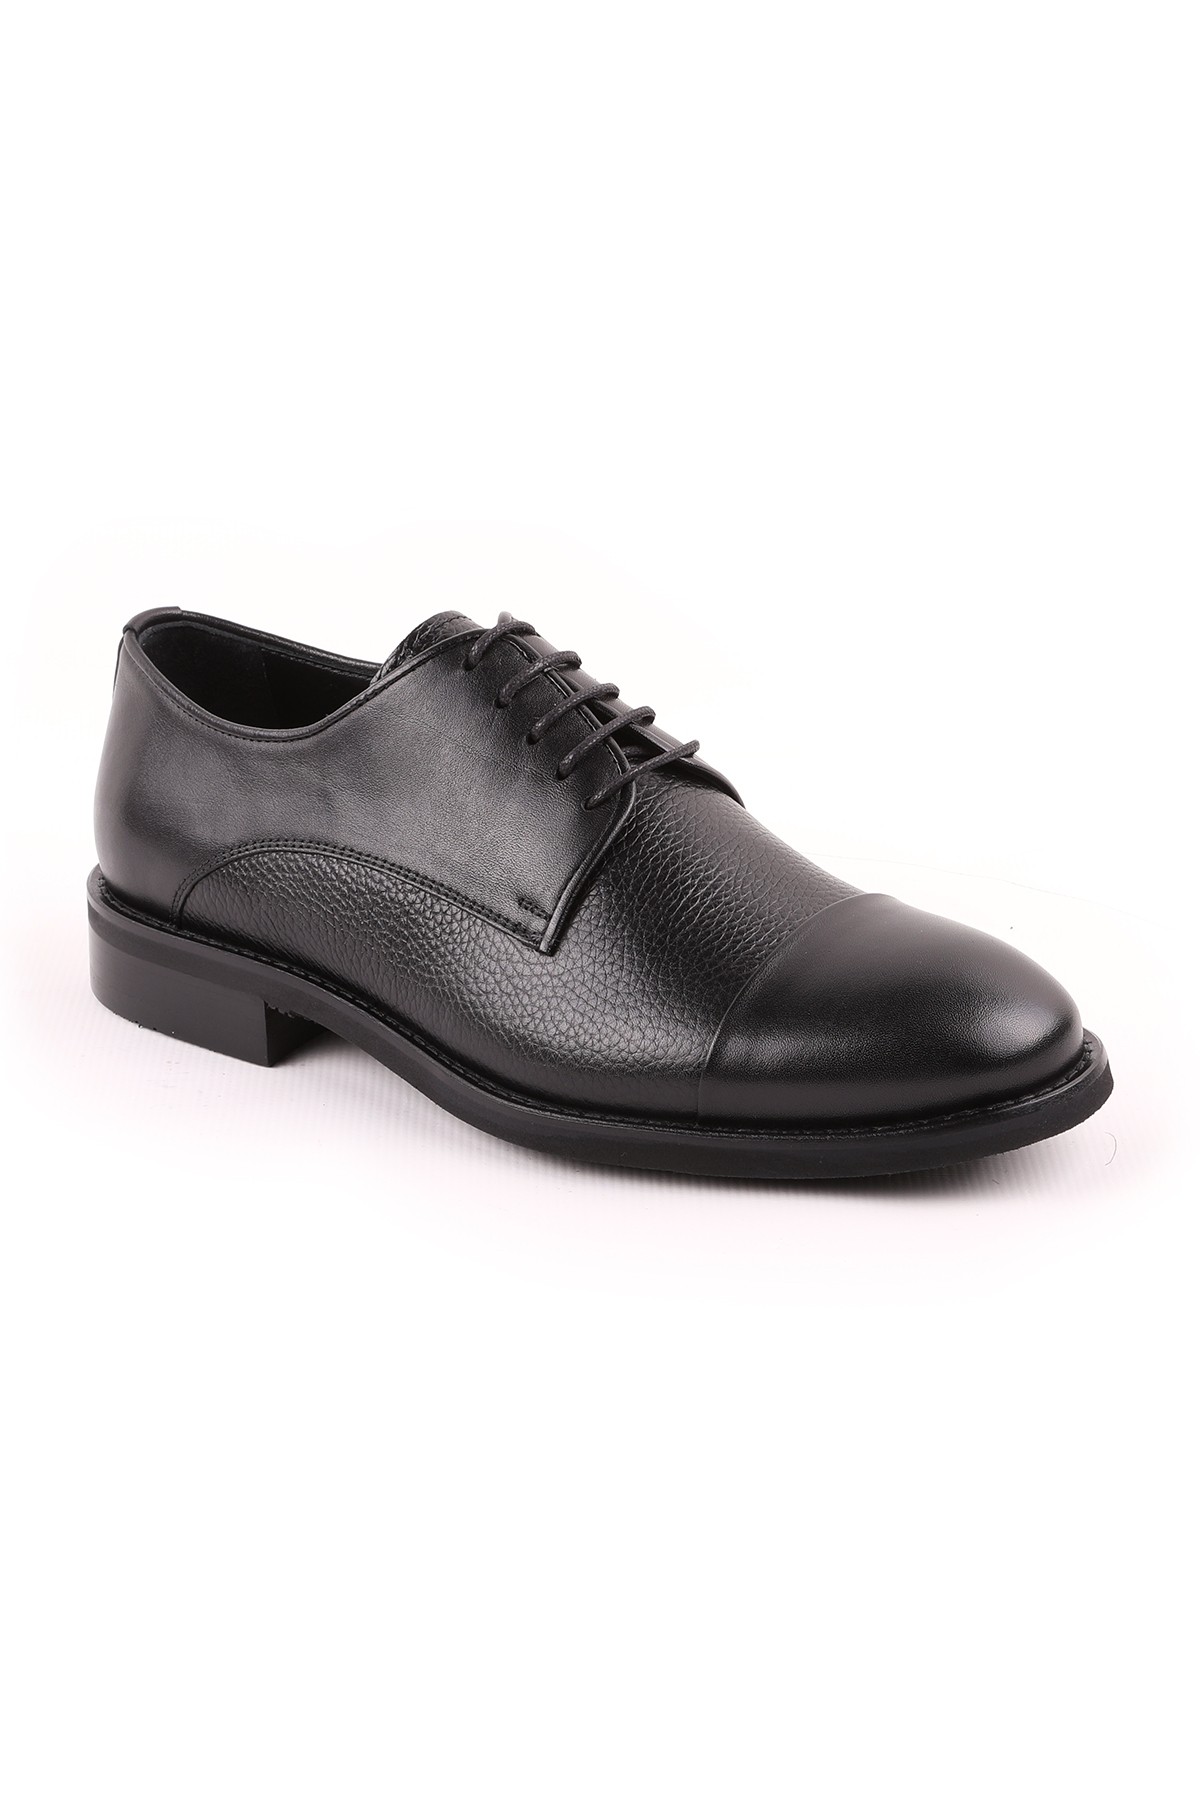 Libero L5096 Klasik Erkek Ayakkabı KAHVE - Siyah